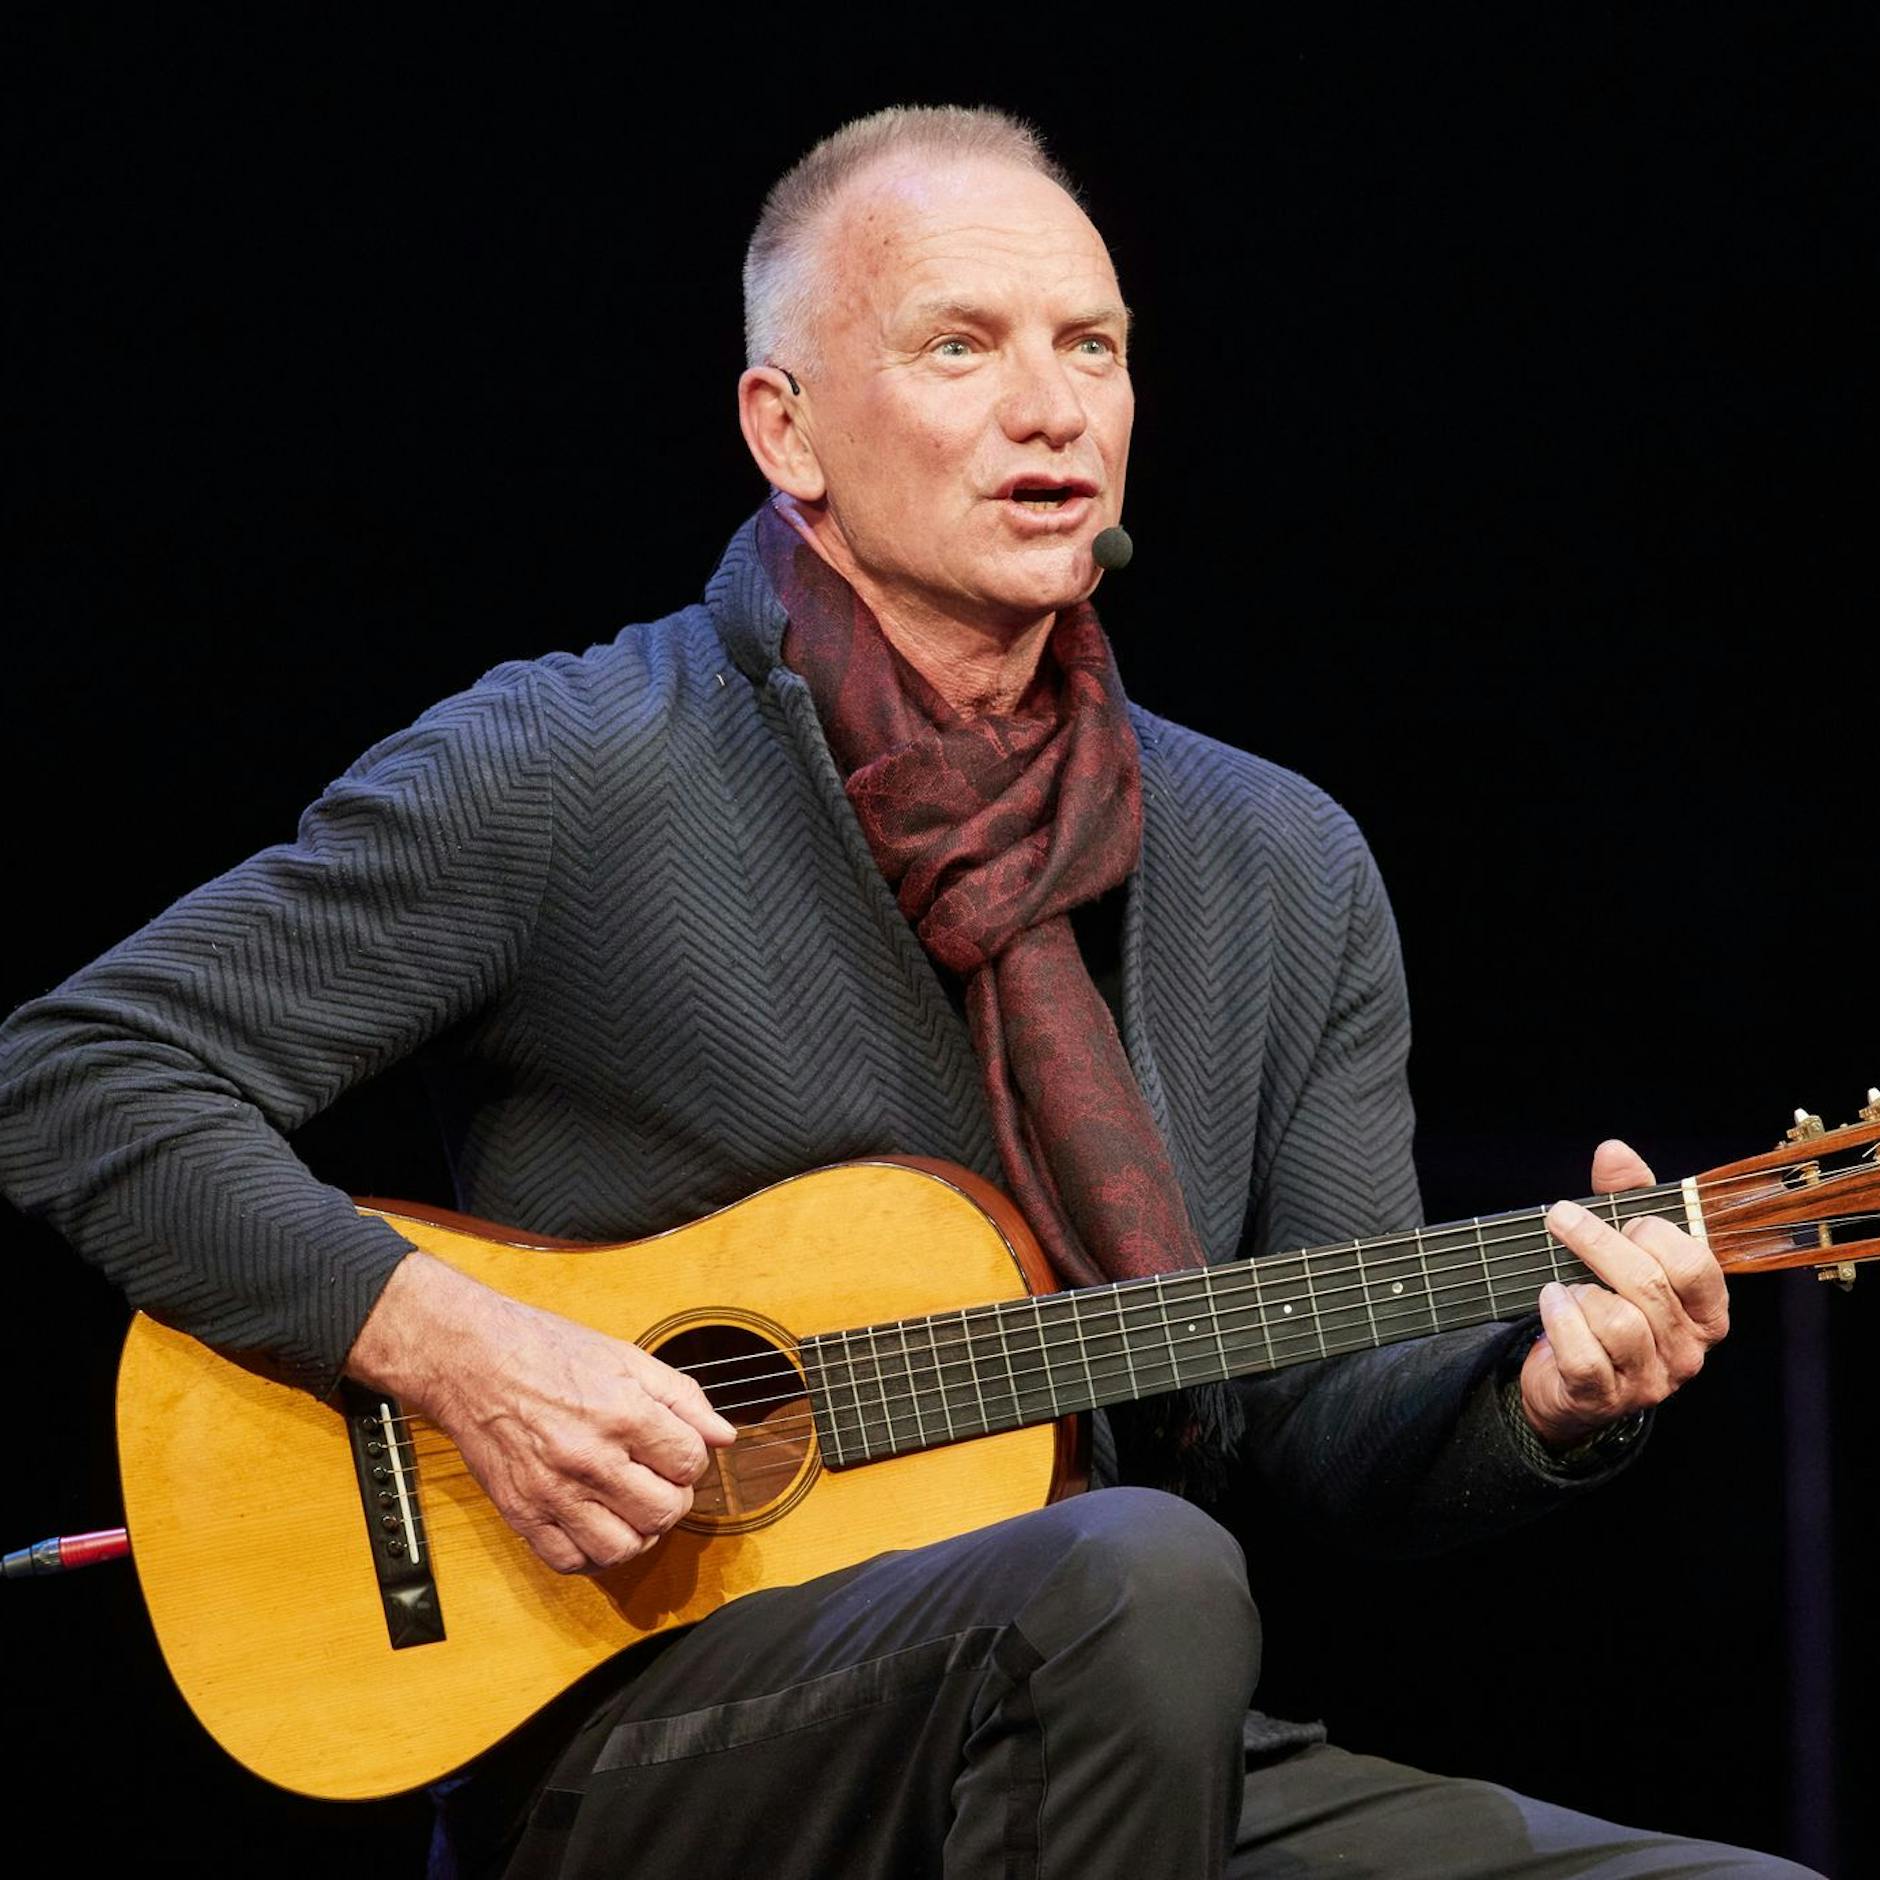 Image - Sting verschiebt wegen Erkrankung Konzerte